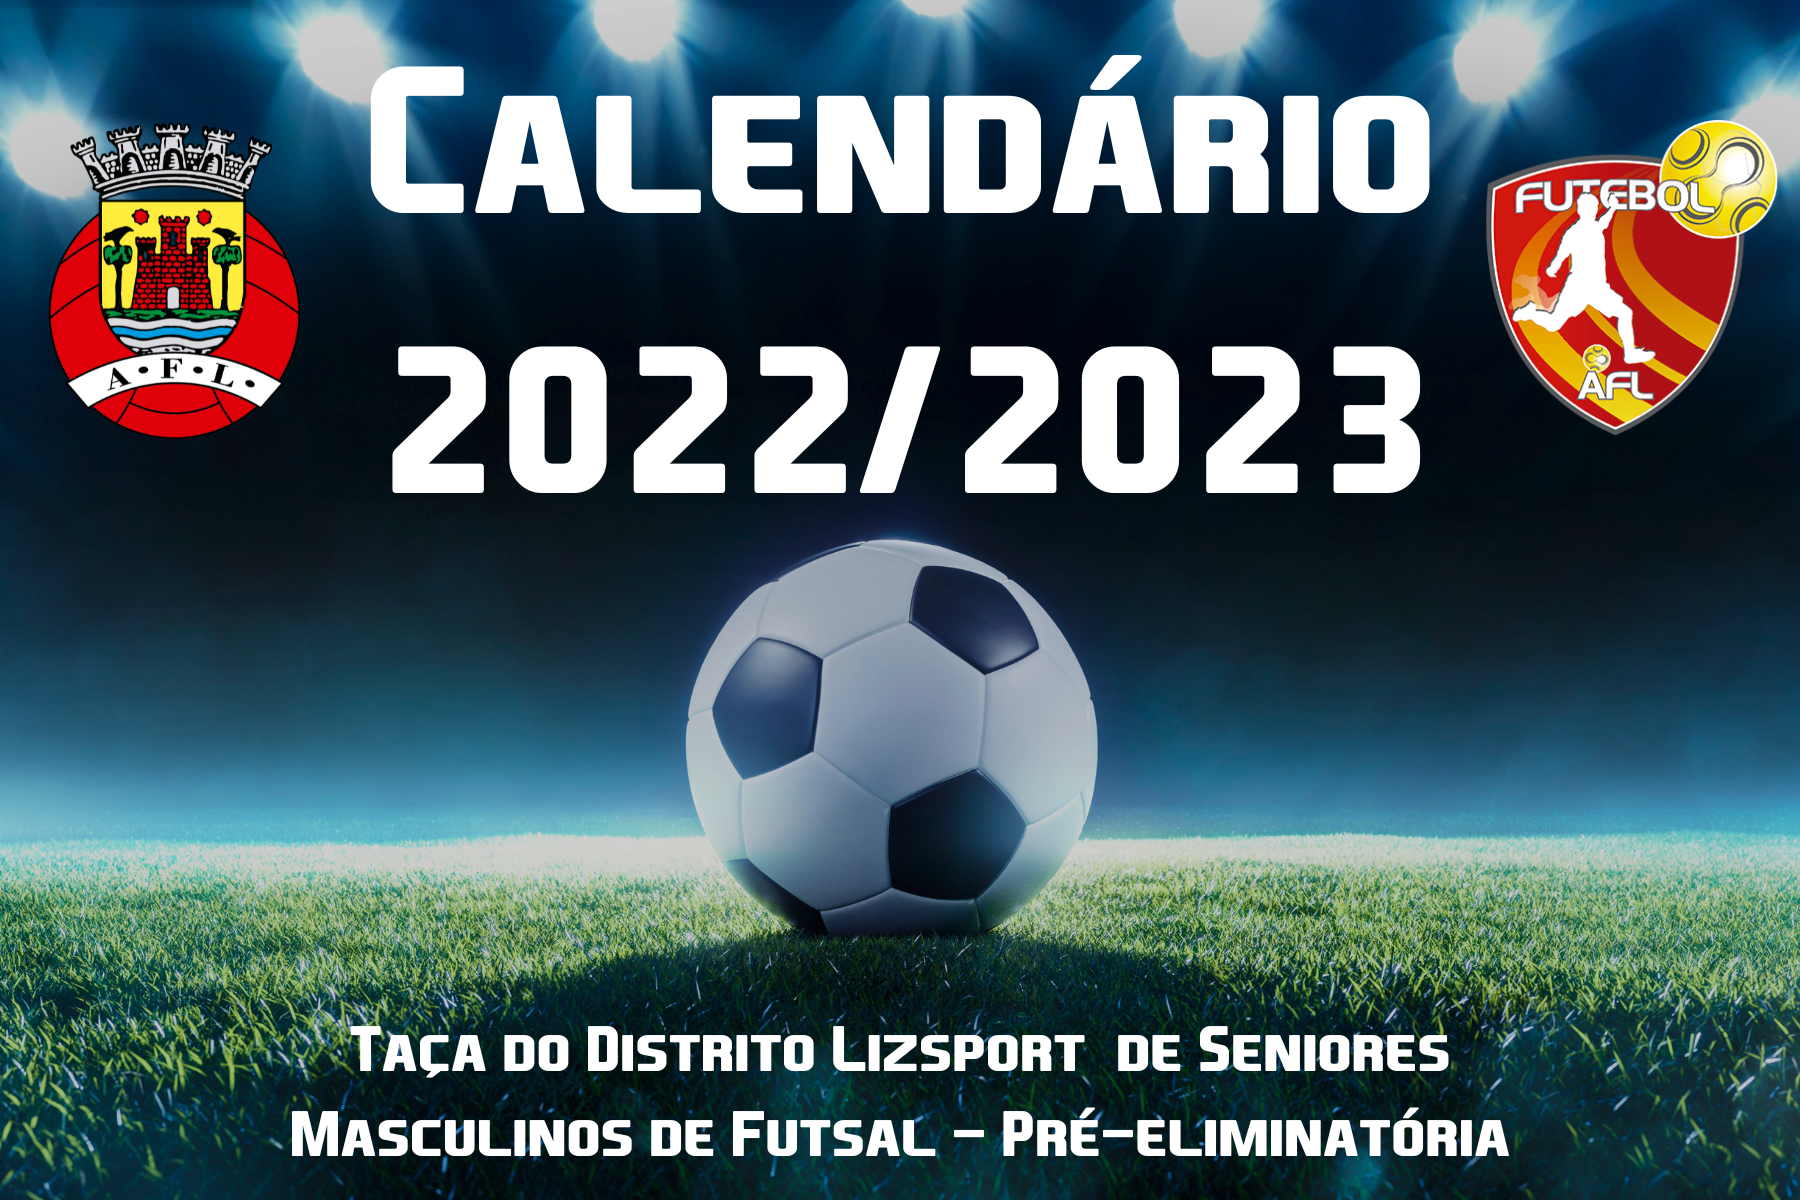 Calendário da Taça do Distrito Lizsport de Futsal - Pré-eliminatória